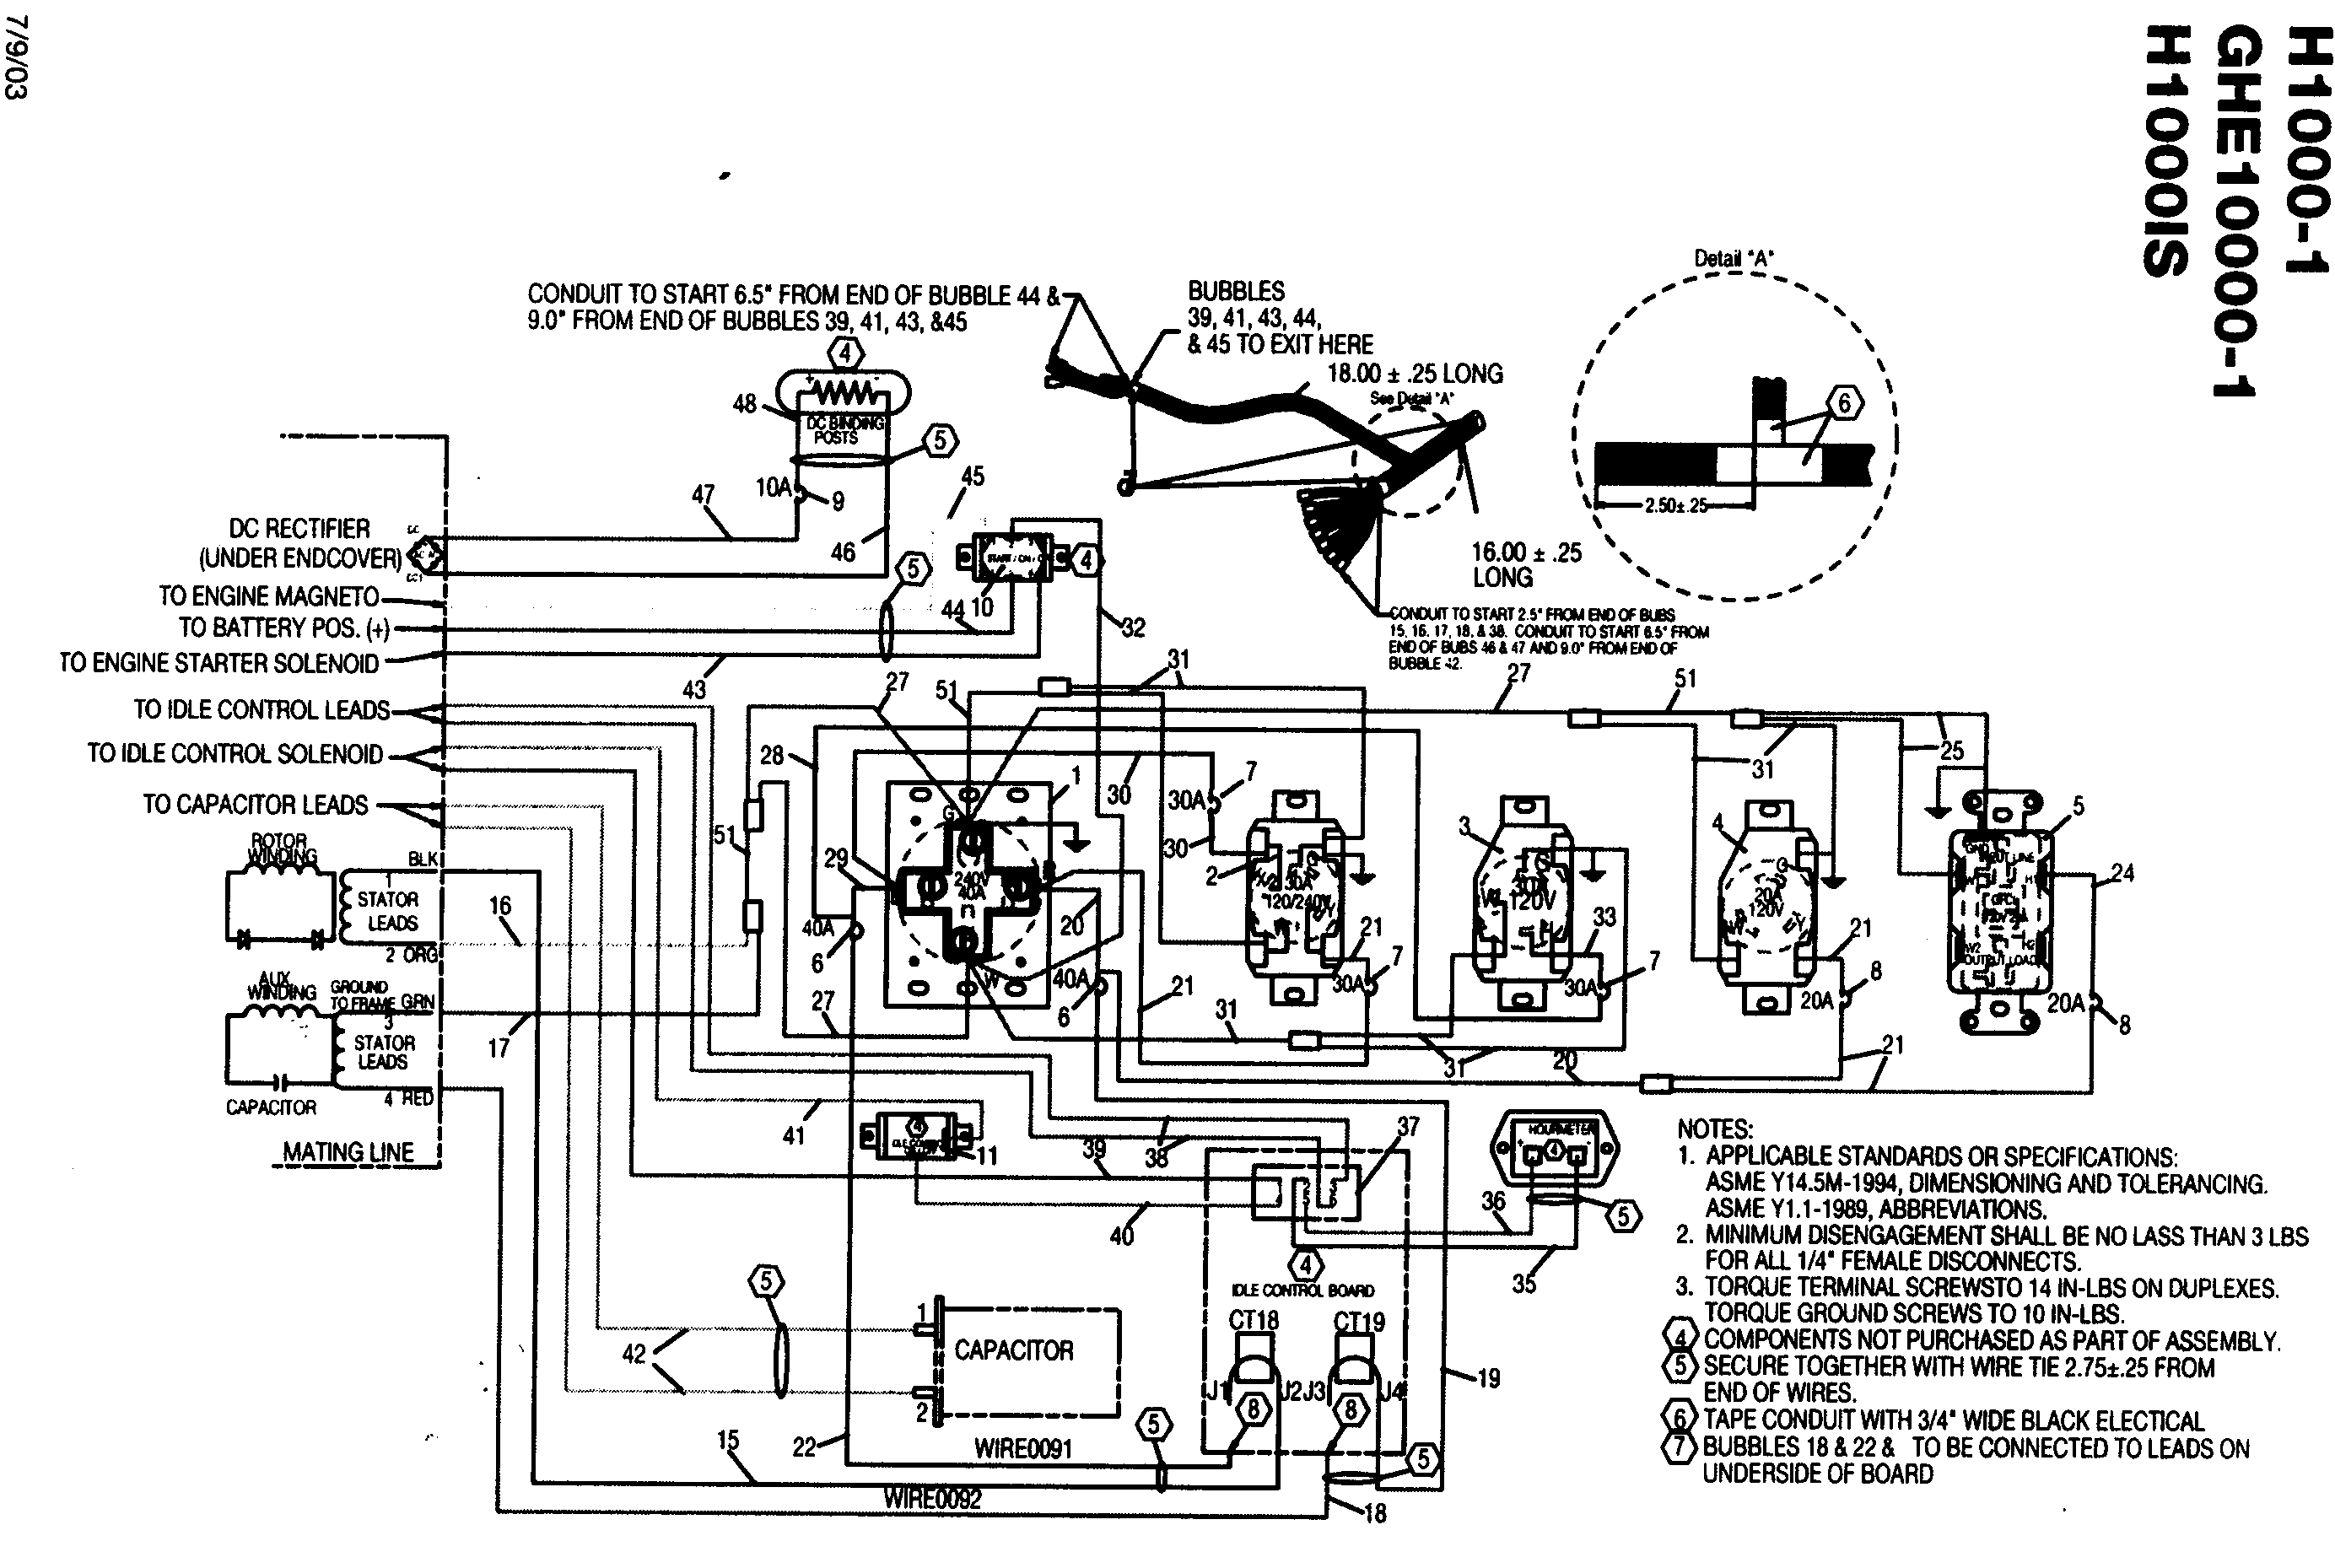 Honda generator wiring schematic